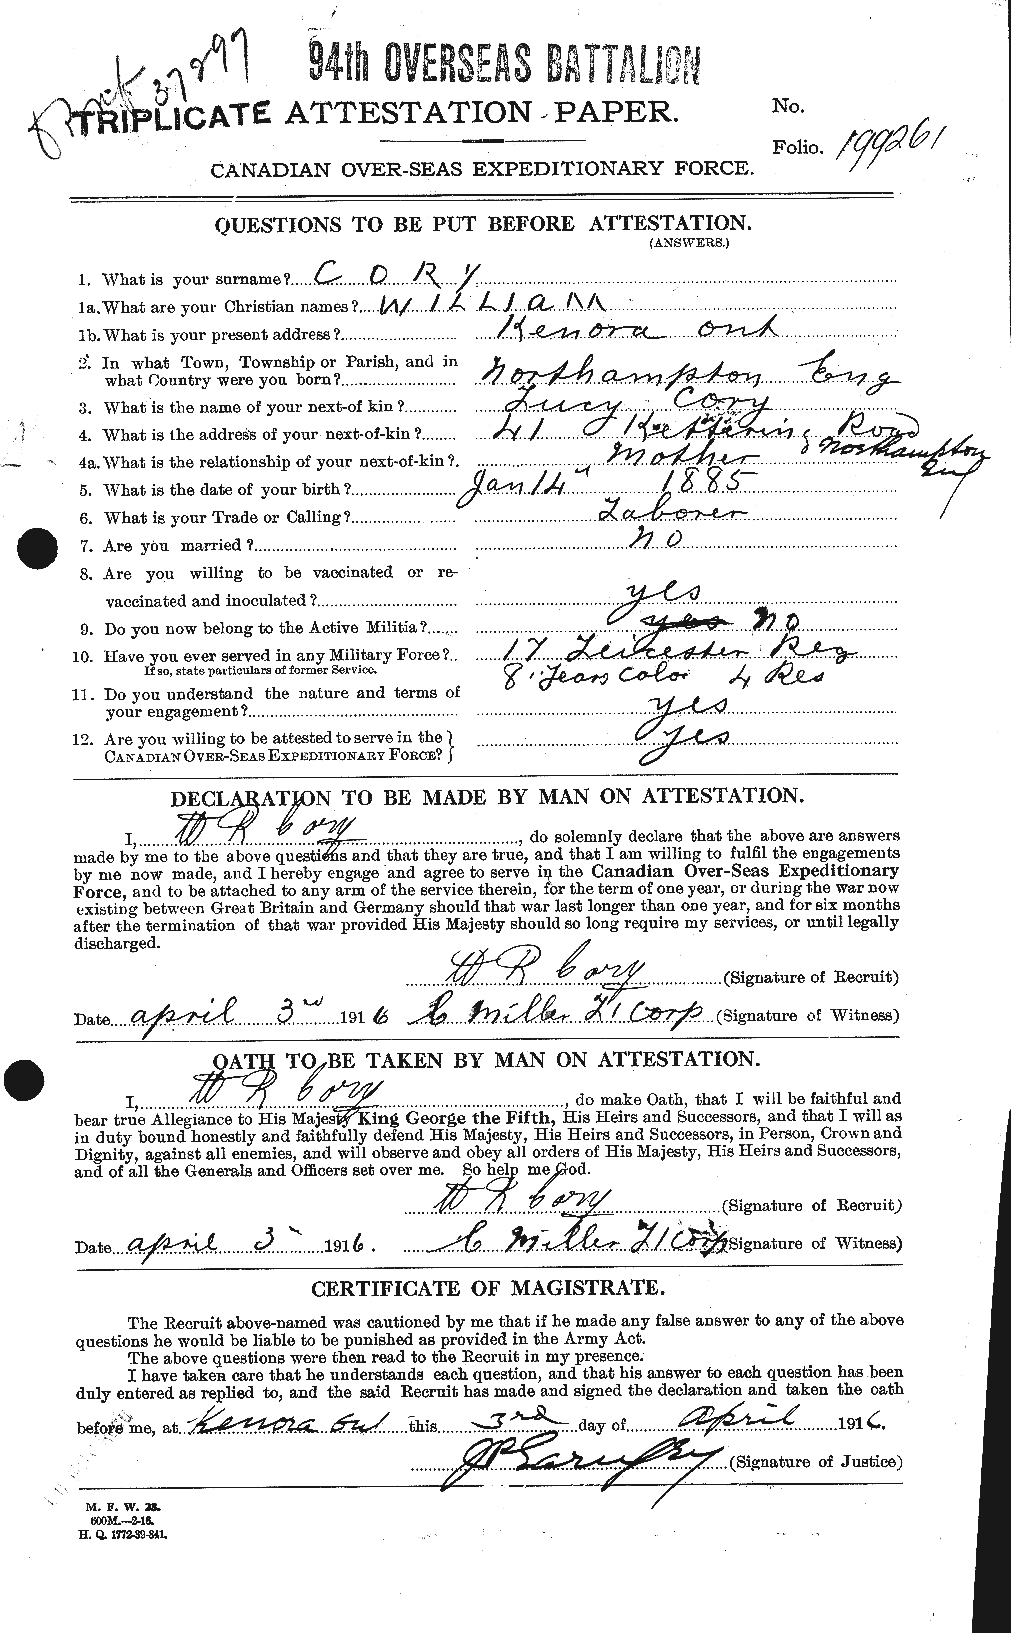 Dossiers du Personnel de la Première Guerre mondiale - CEC 058077a